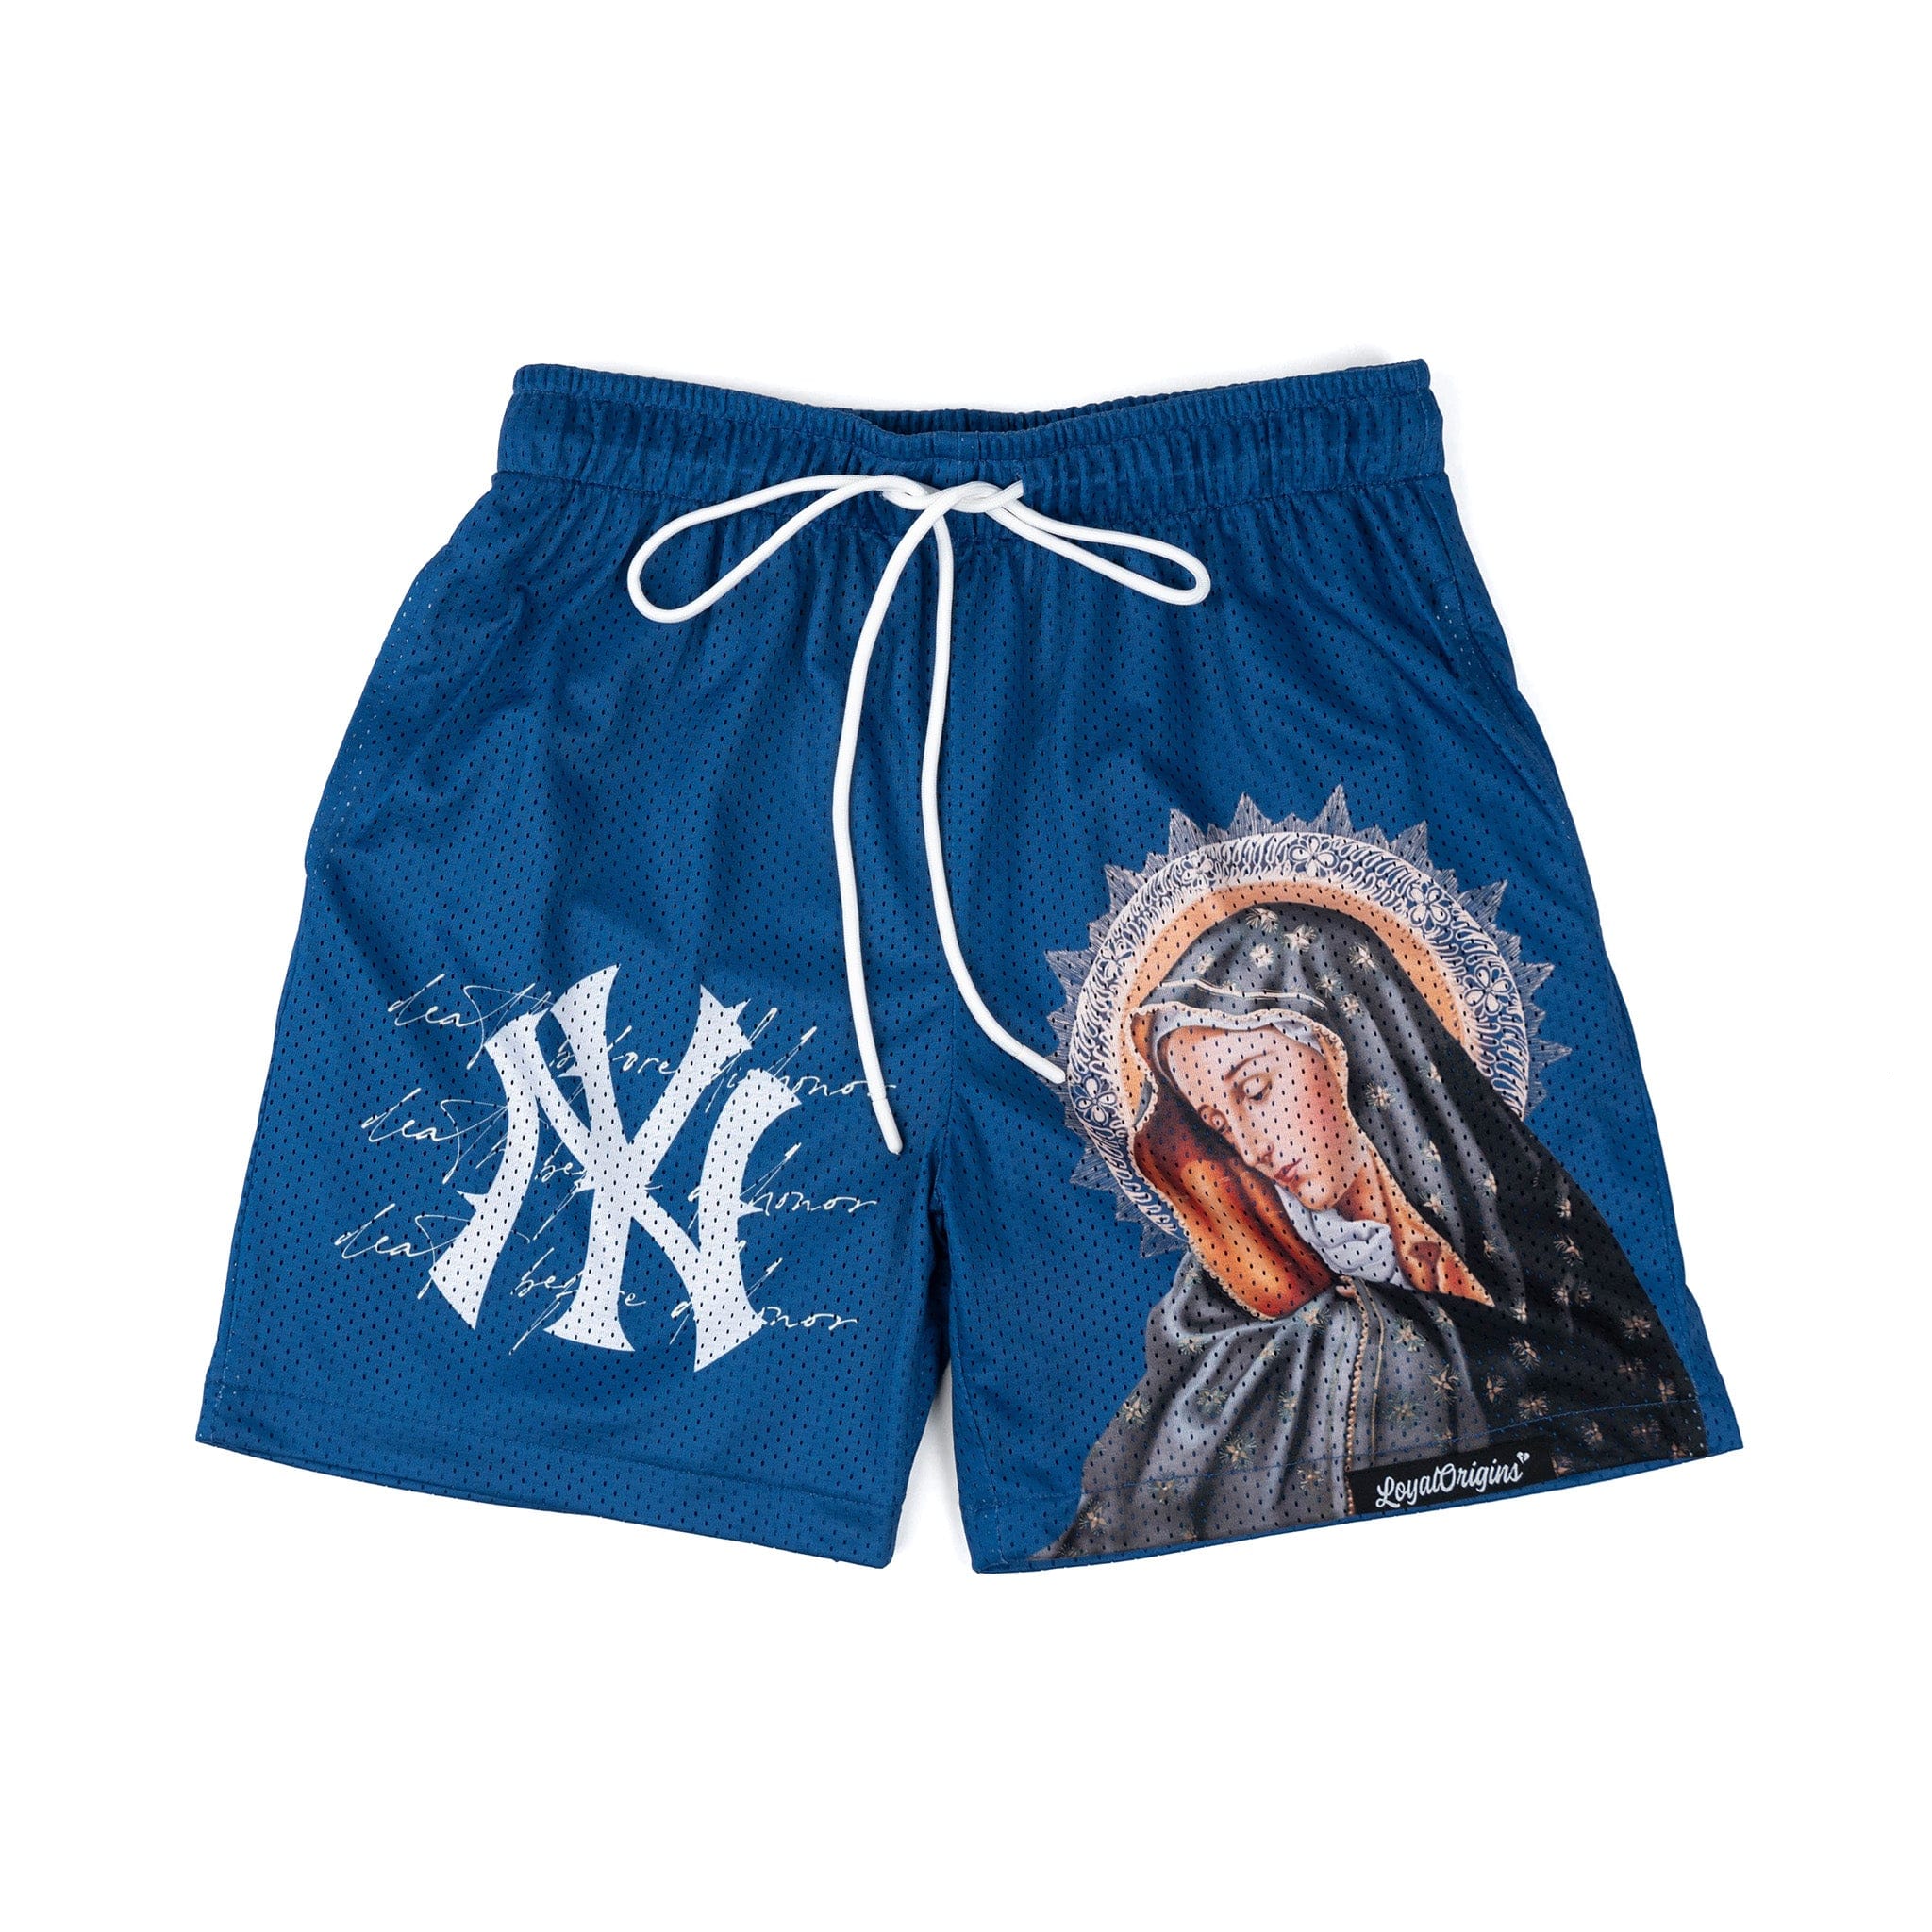 New York 'Ave Maria' Premium Mesh Shorts